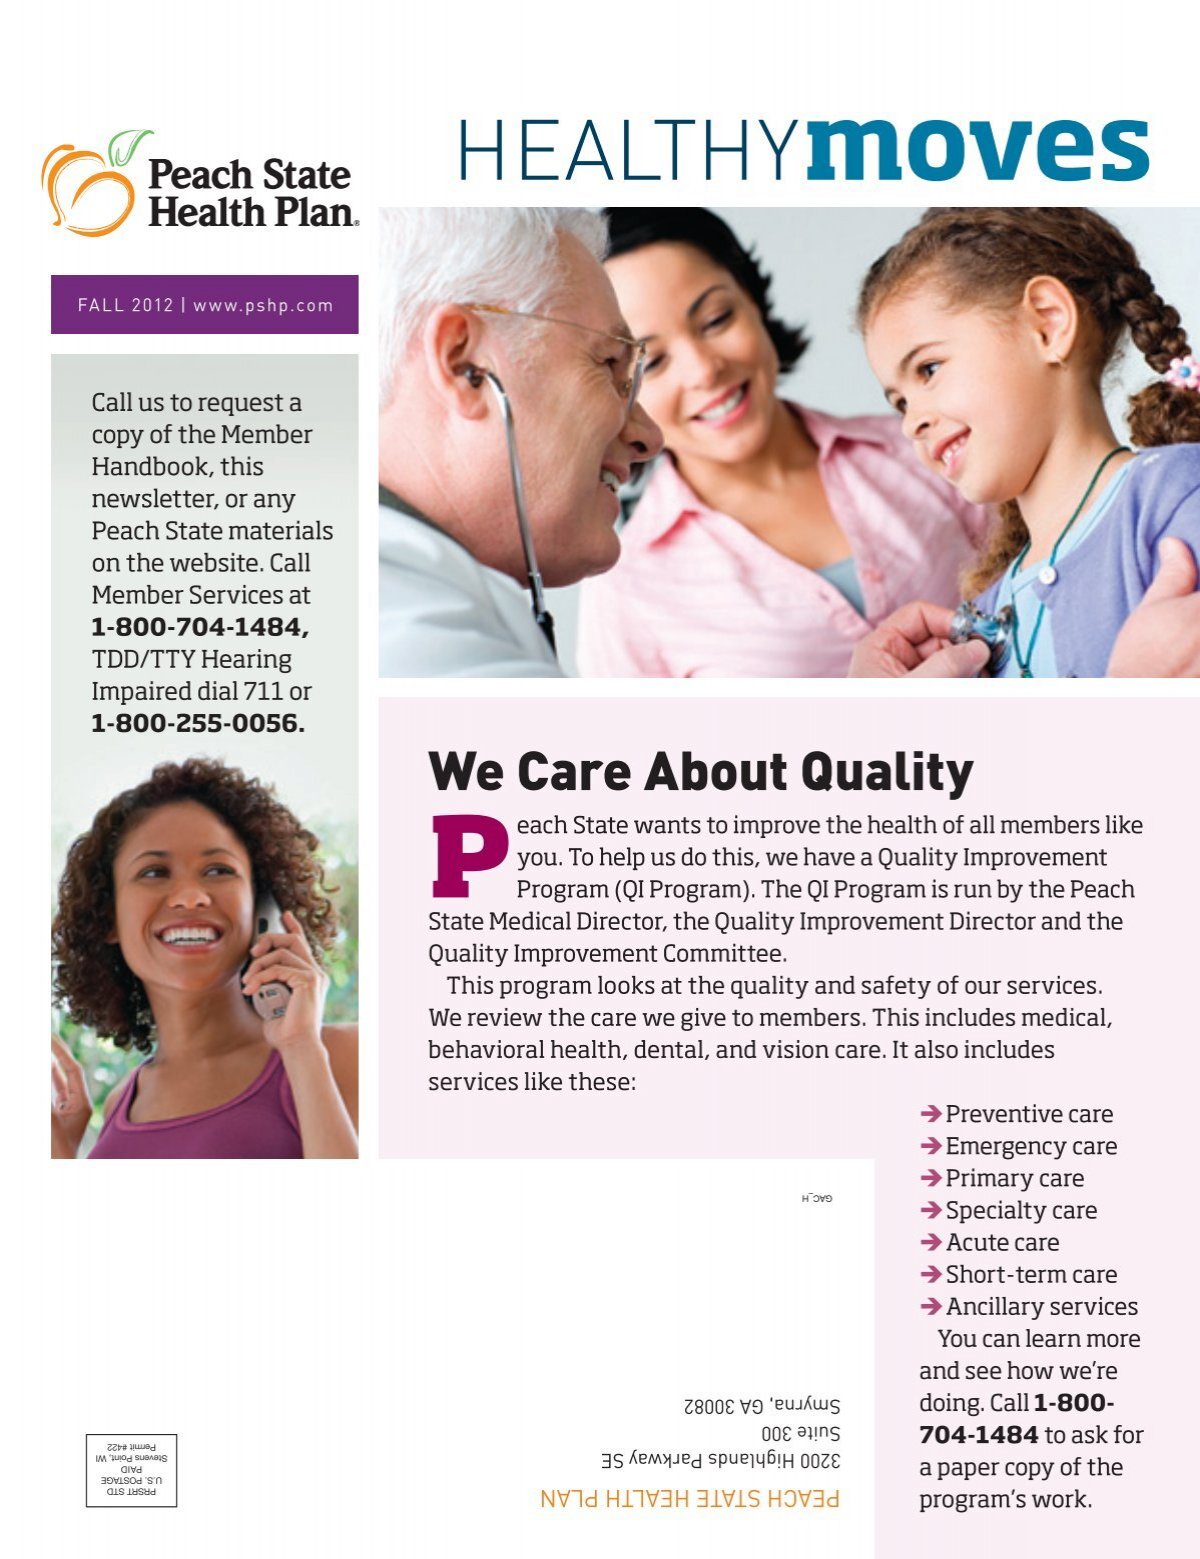 peach care health plan